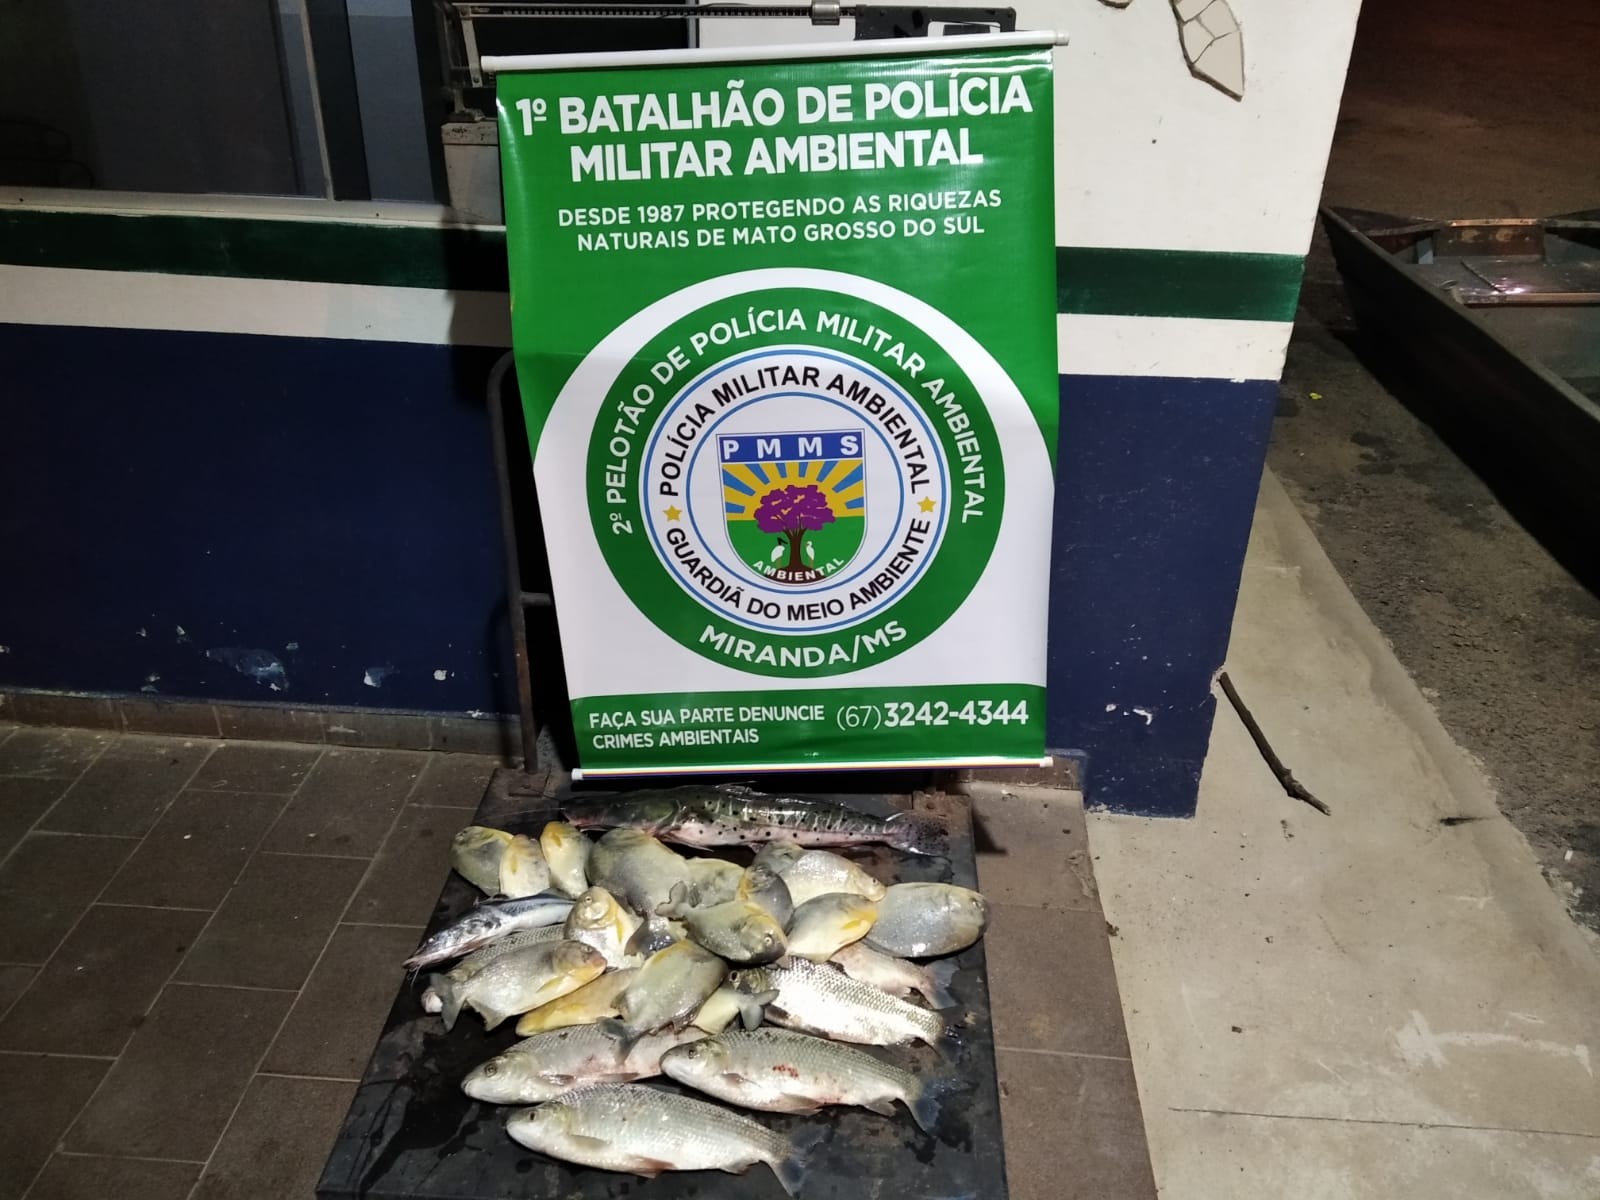 Pescadores sem autorização, com pescado abaixo da medida e usando equipamento proibido são presos em MS